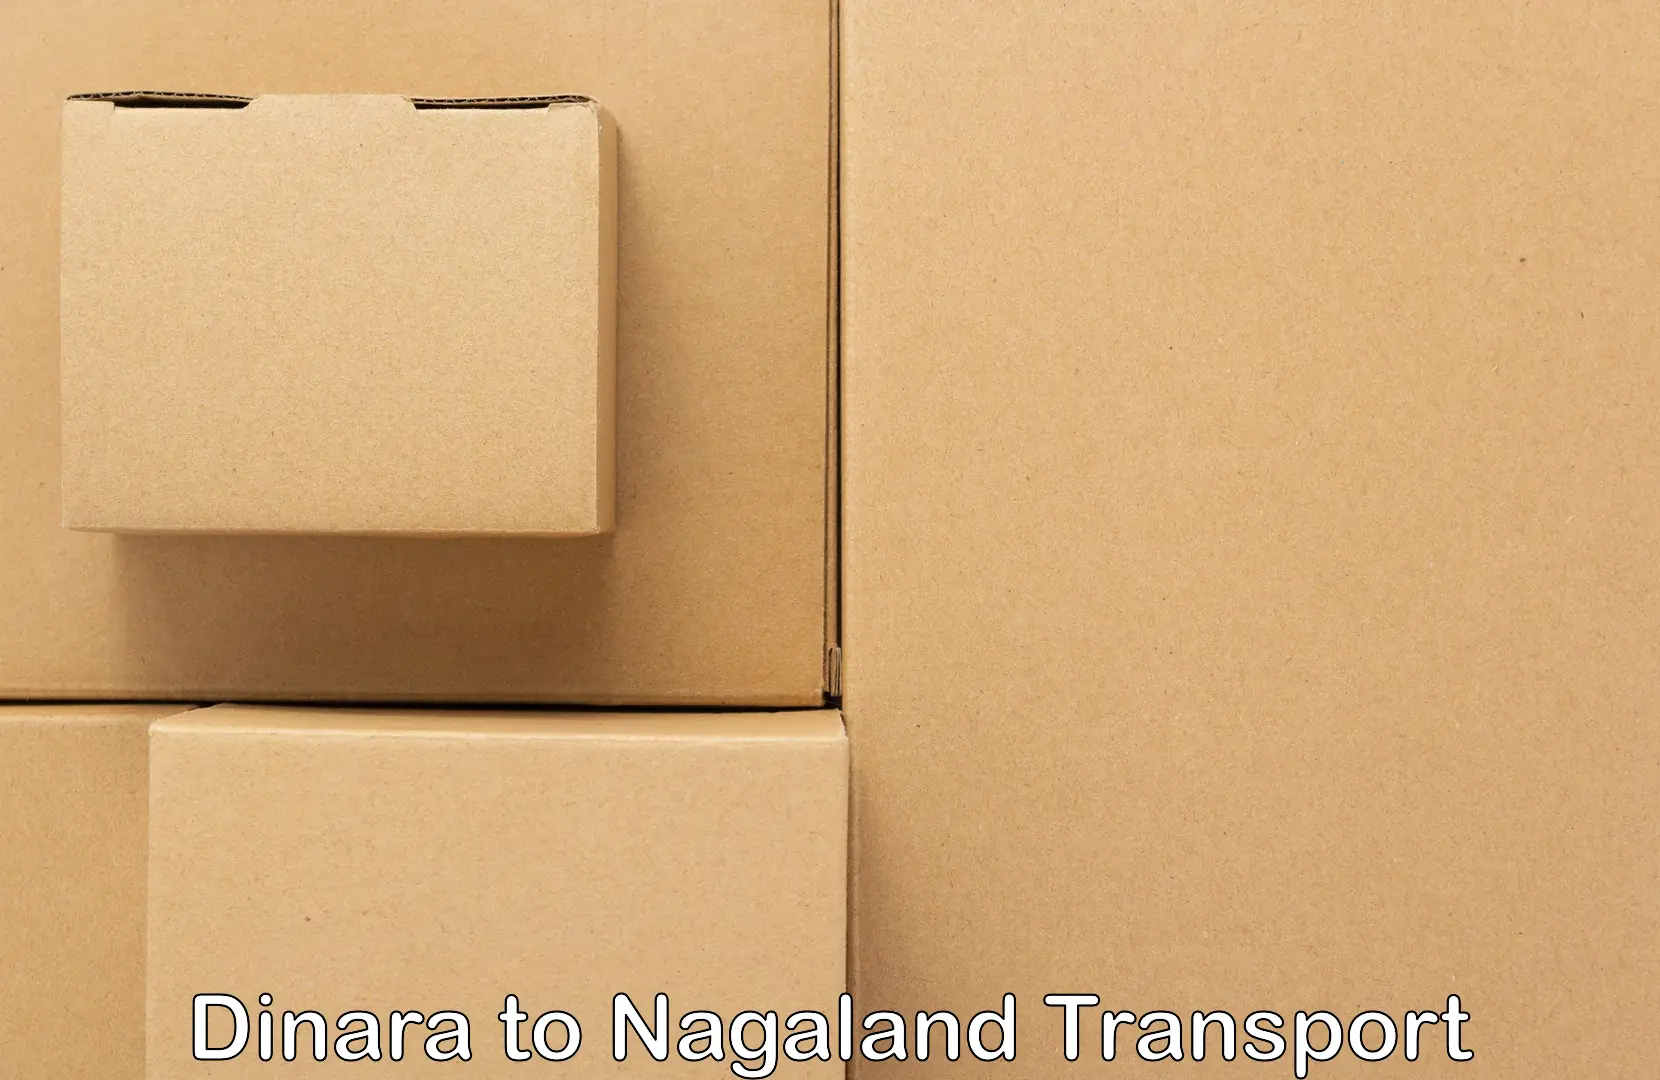 Cycle transportation service Dinara to NIT Nagaland